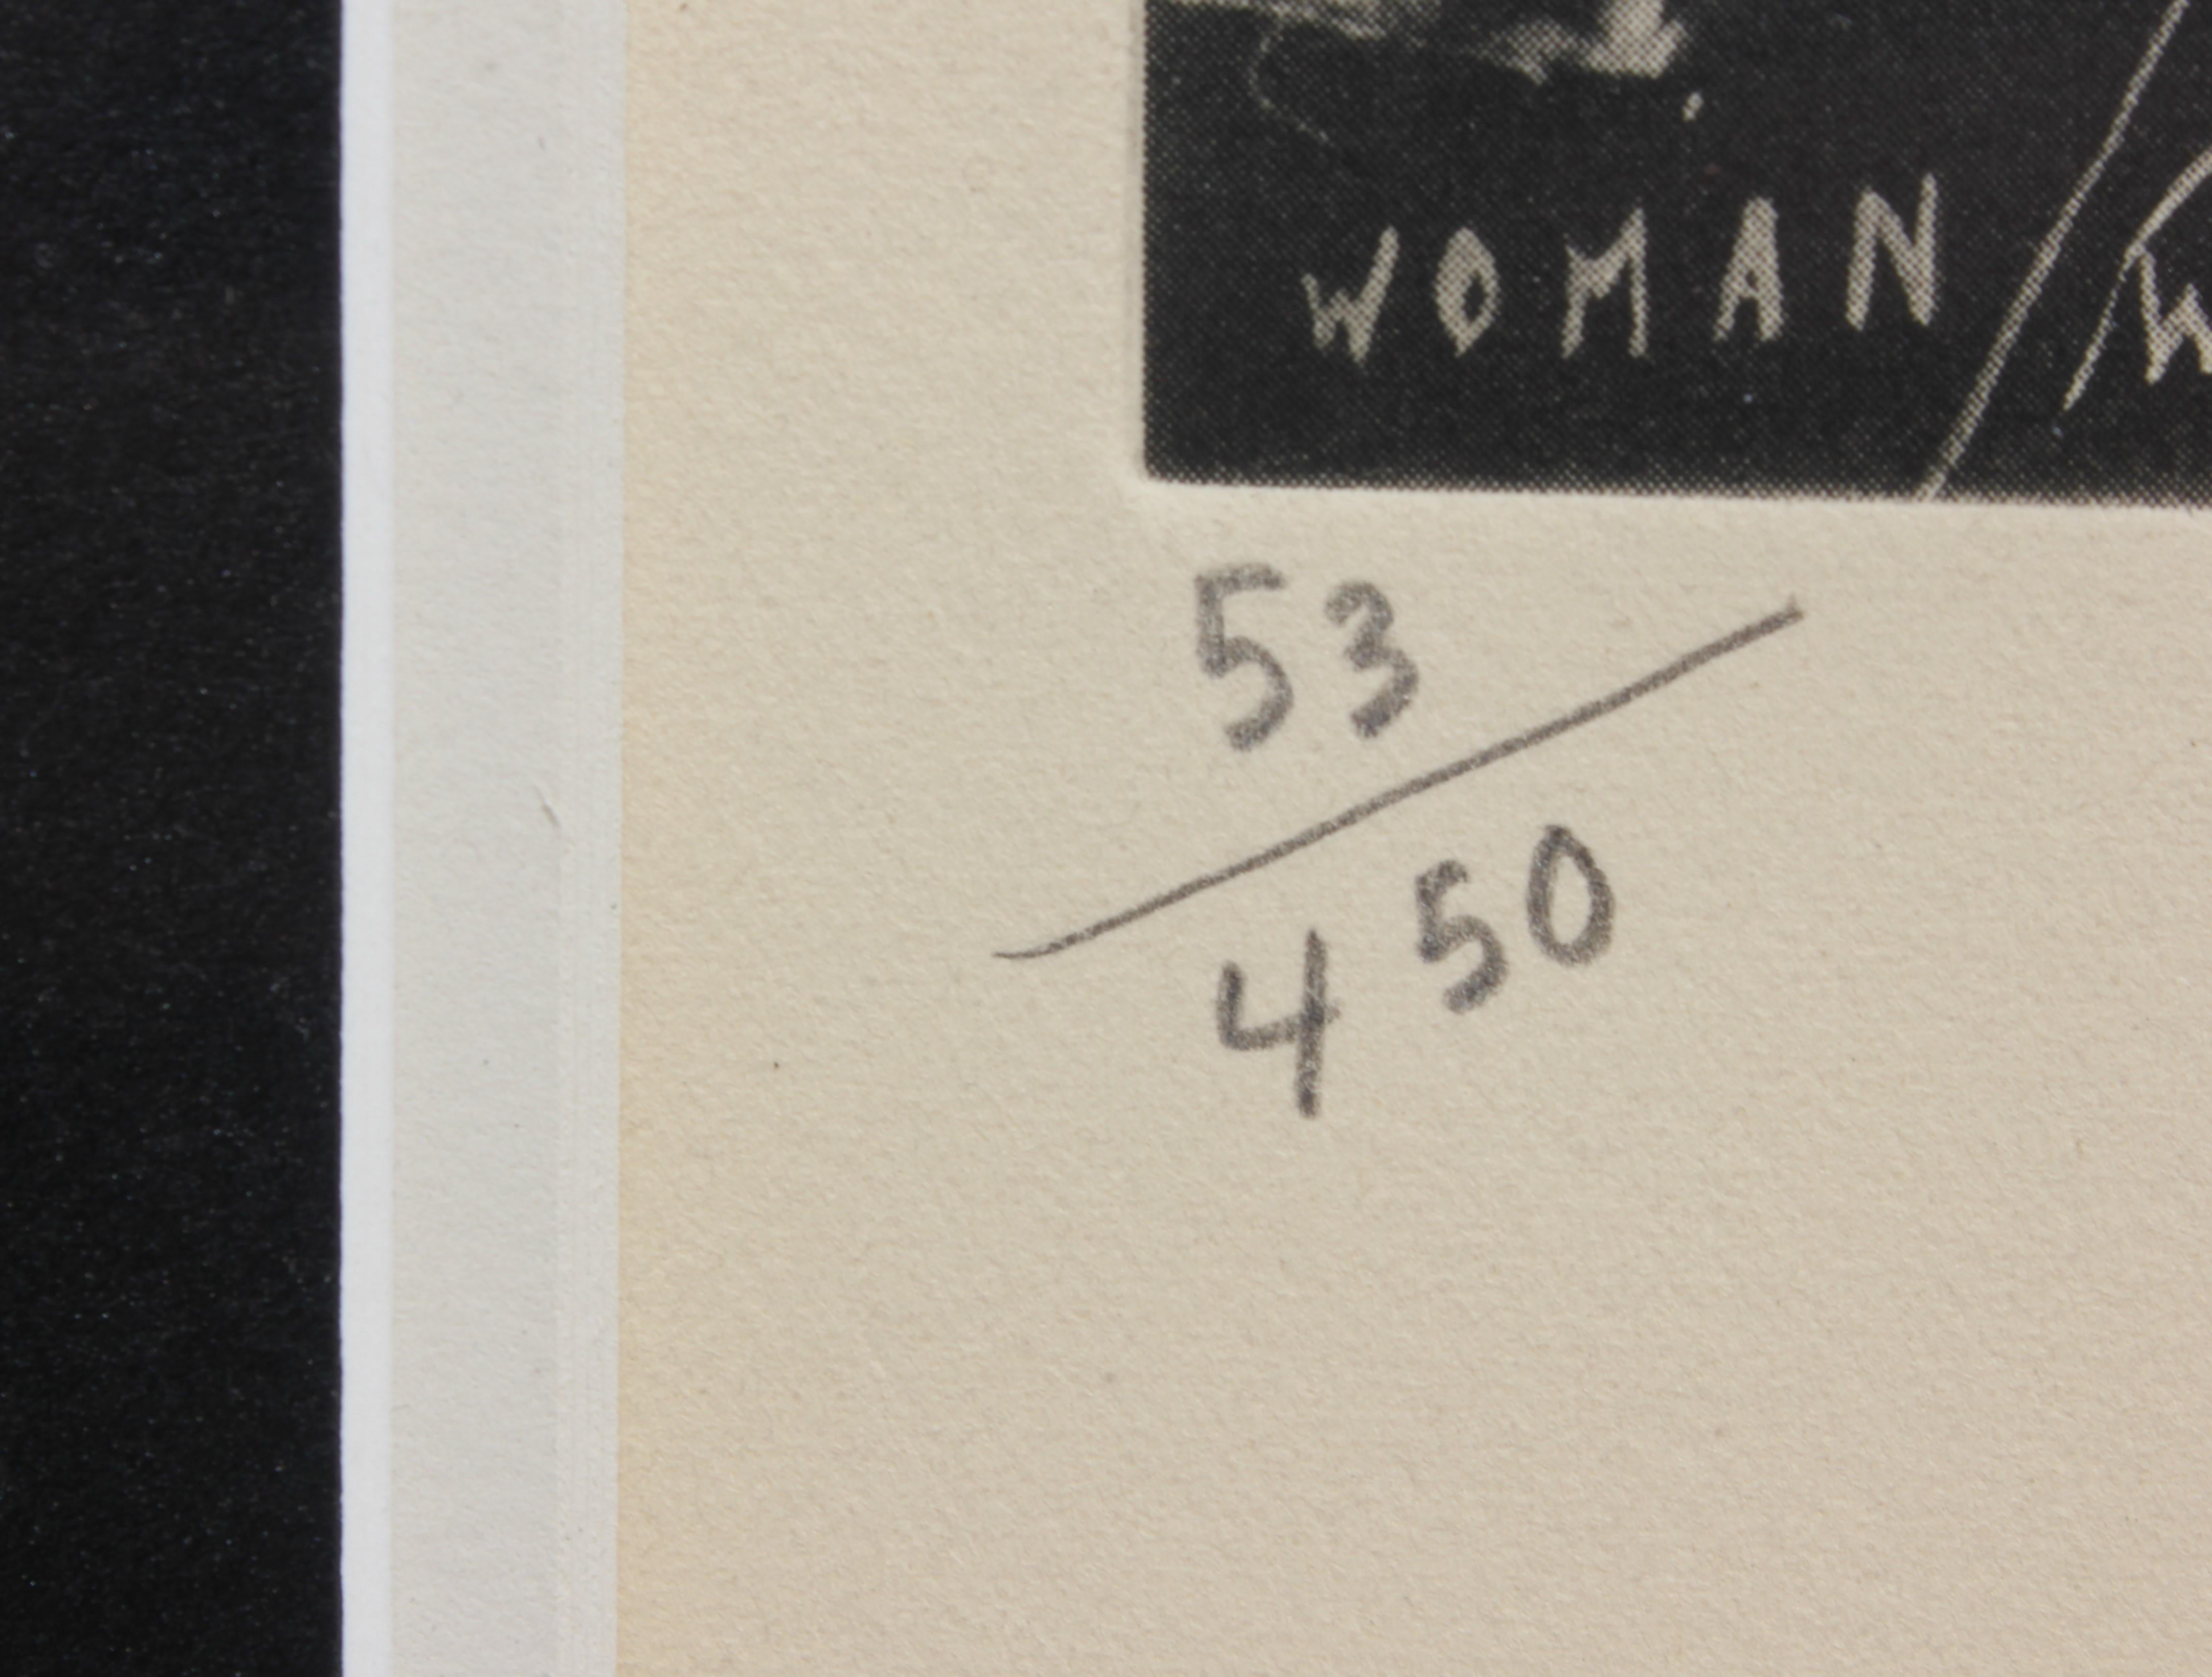 Diese Lithografie von Sue Coe, die dafür bekannt ist, schwierige Themen anzusprechen, befasst sich mit dem schwierigen Thema der Vergewaltigungskultur. Es ist in der linken unteren Ecke nummeriert und rechts unten signiert und datiert. Aufgehängt in